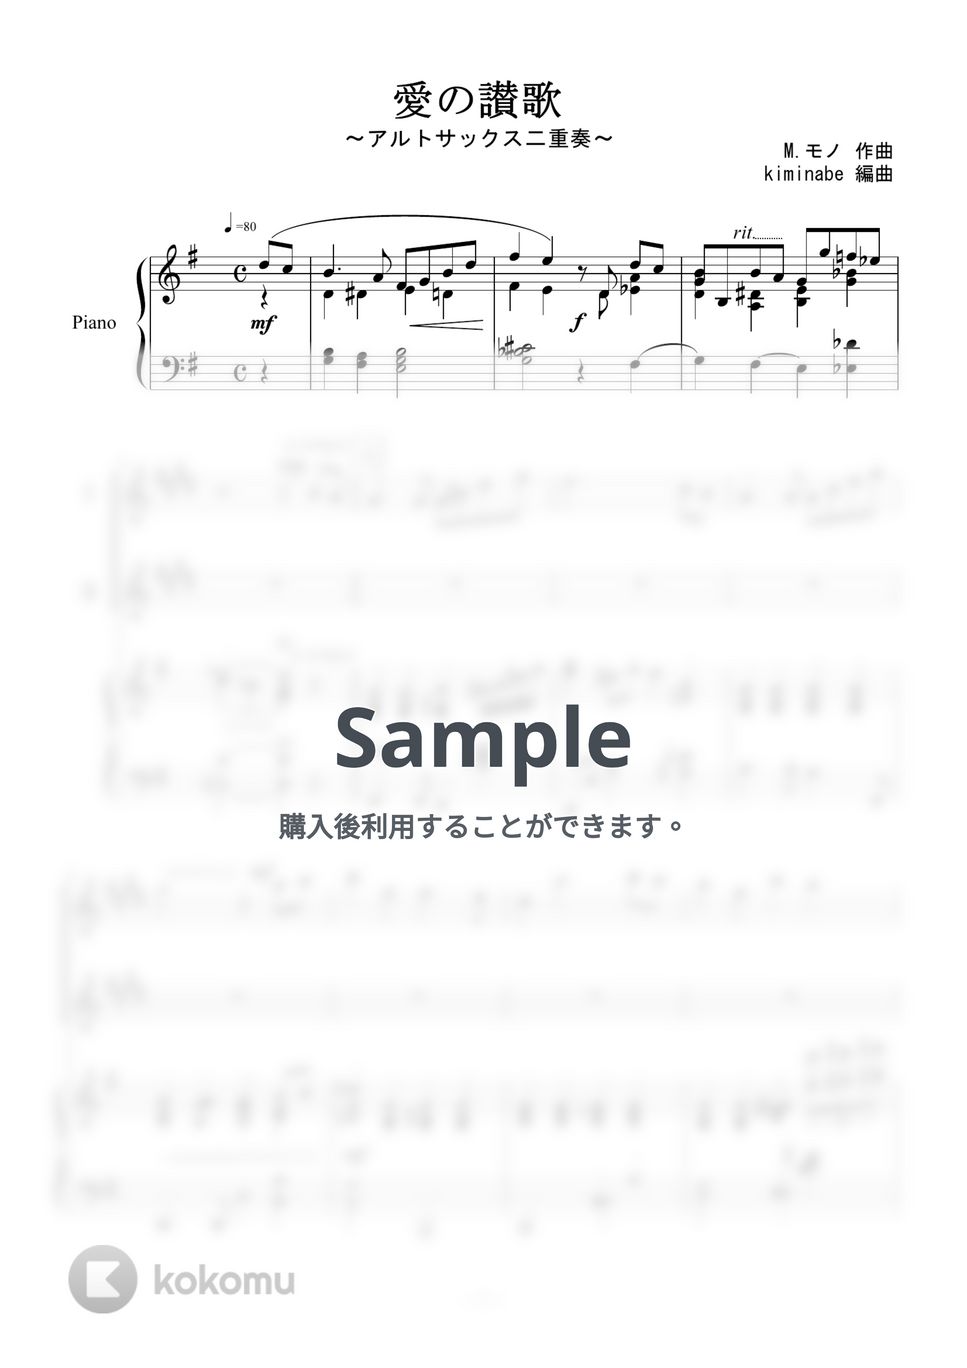 越路吹雪 - 愛の讃歌 (アルトサックス二重奏) by kiminabe